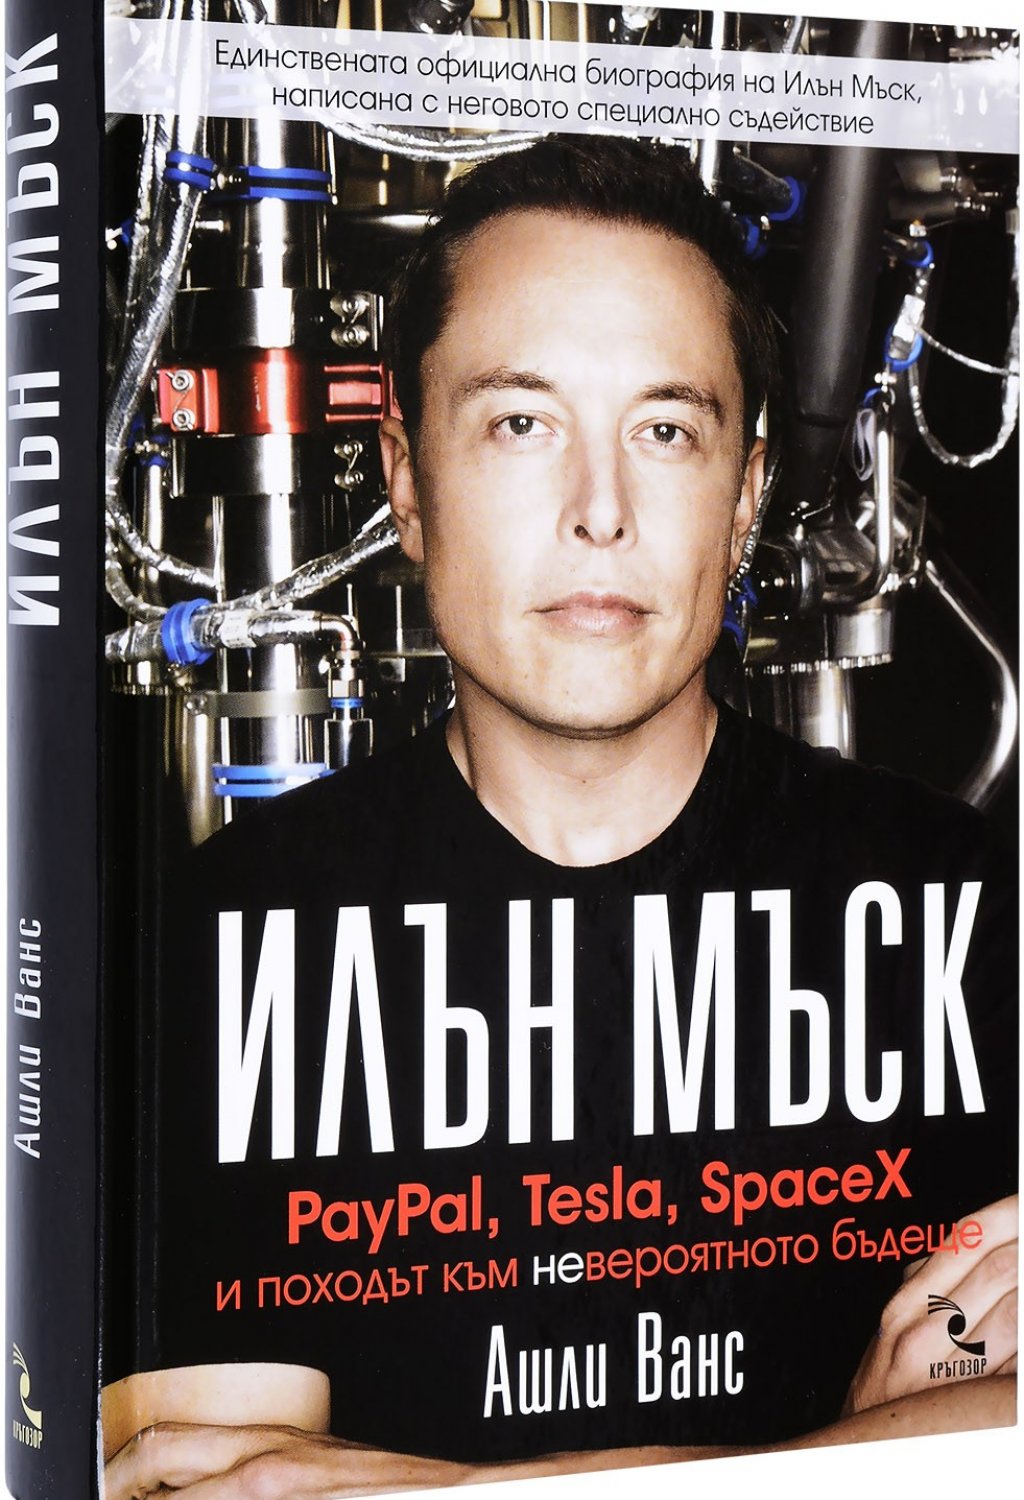 "Илън Мъск: PayPal, Tesla, SpaceX и походът към невероятното бъдеще" от Ашли Ванс
Става дума за единствената официална биография на Илън Мъск, която е написана с неговото съгласие и съдействие. Книгата е написана след повече от 50 часа разговори с Мъск и проследява кариерата и живота му: от детството му, което не е било сред най-розовите, до абсолютните върхове на бизнеса. 

На страниците може да прочетете как Мъск измисля "PayPal", "Tesla Motors", "SpaceX", "SolarCity", "Hyperloop", как влага усилията си едновременно в три индустрии (автомобилната, космическата и енергийната) и как иска да спаси човечеството.